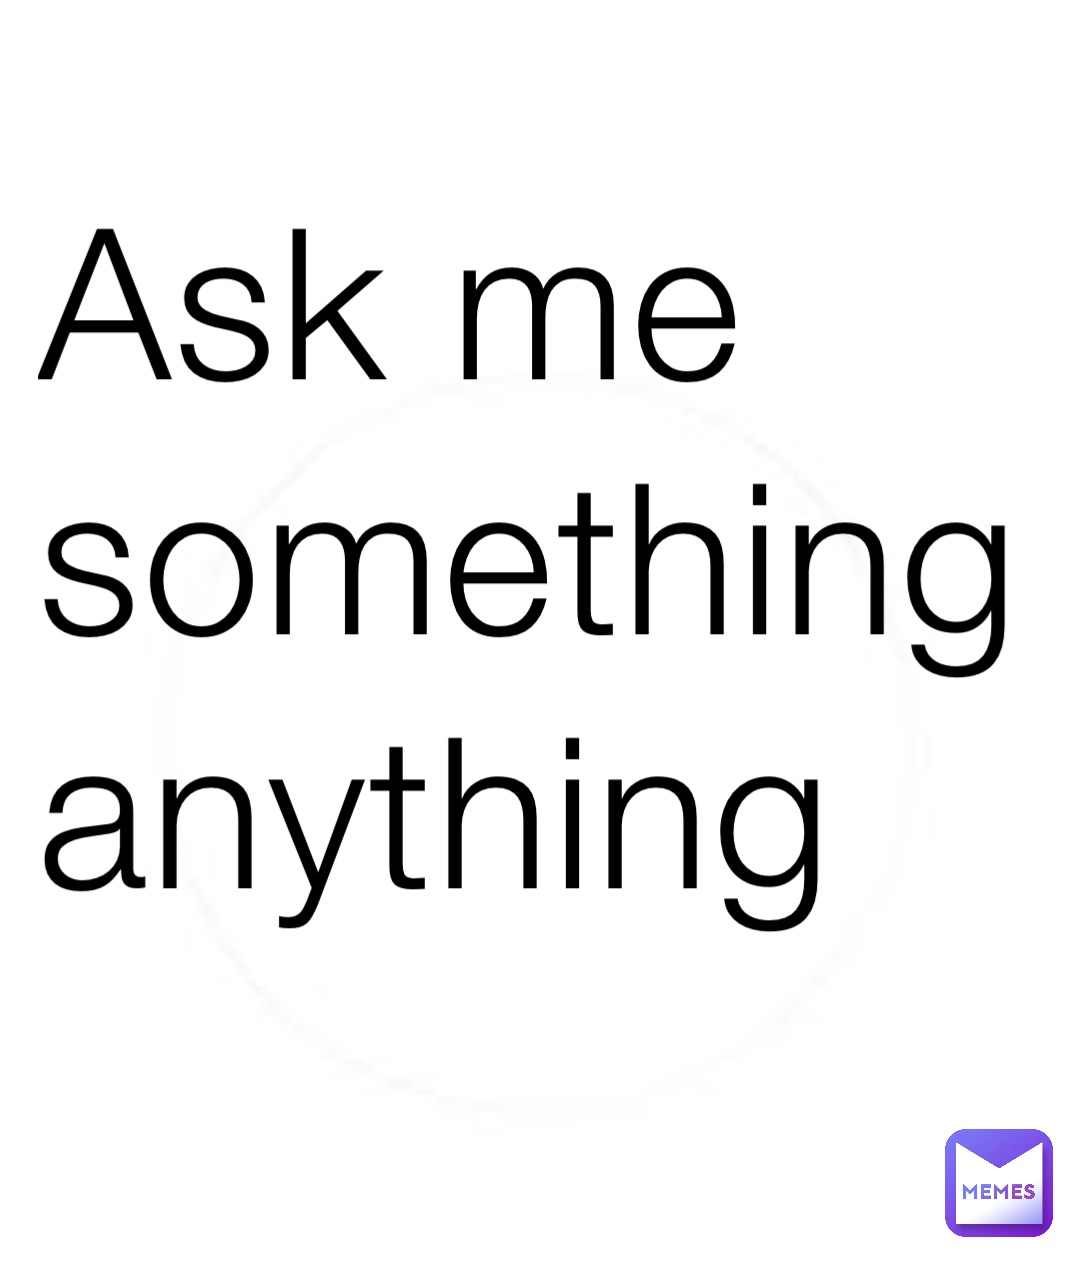 Ask me something 
anything